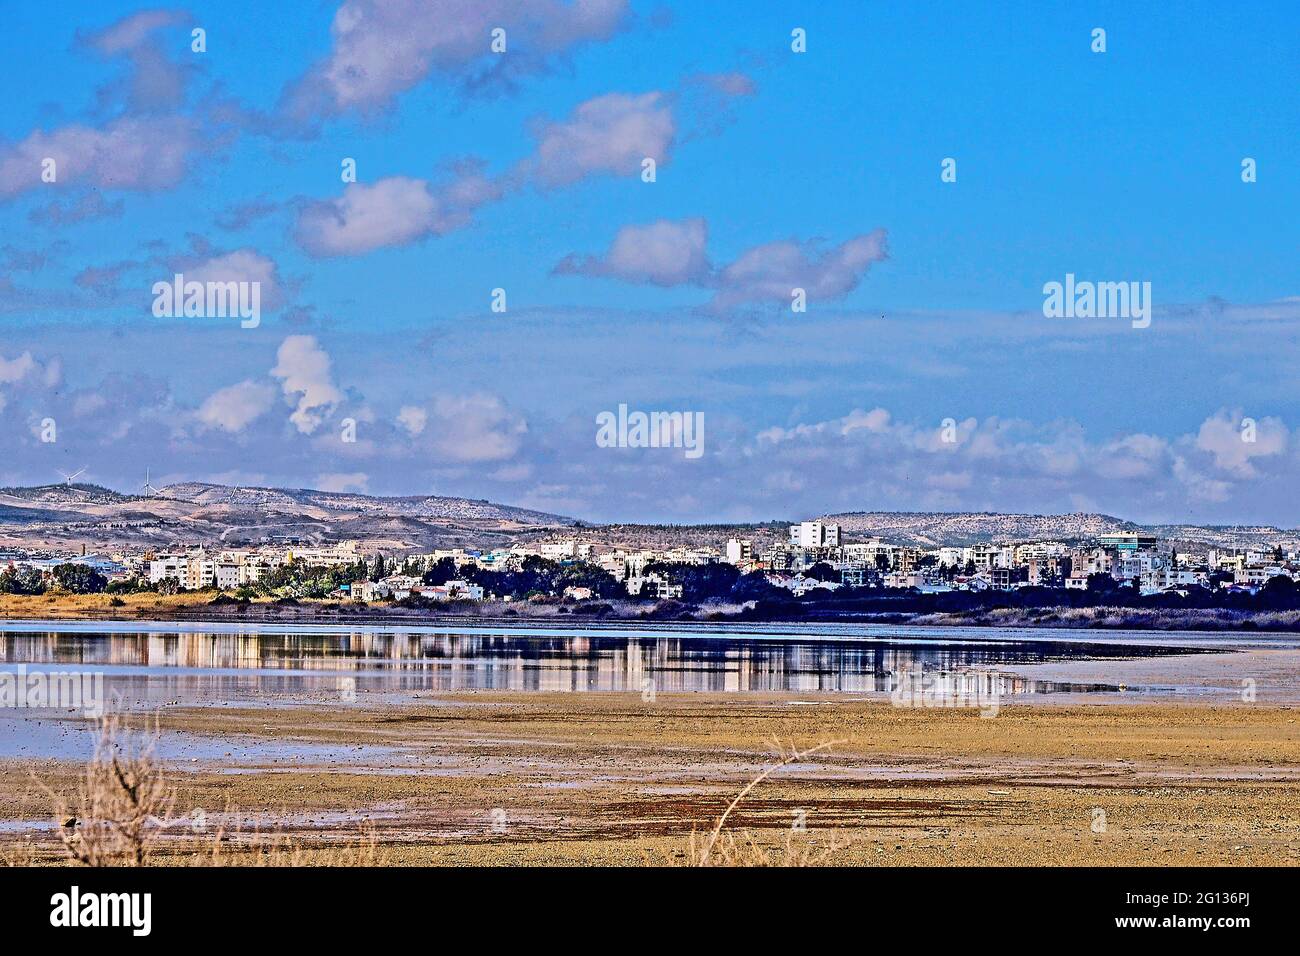 Vista a través de los lagos salados a la ciudad de Larnaca a finales de verano Foto de stock